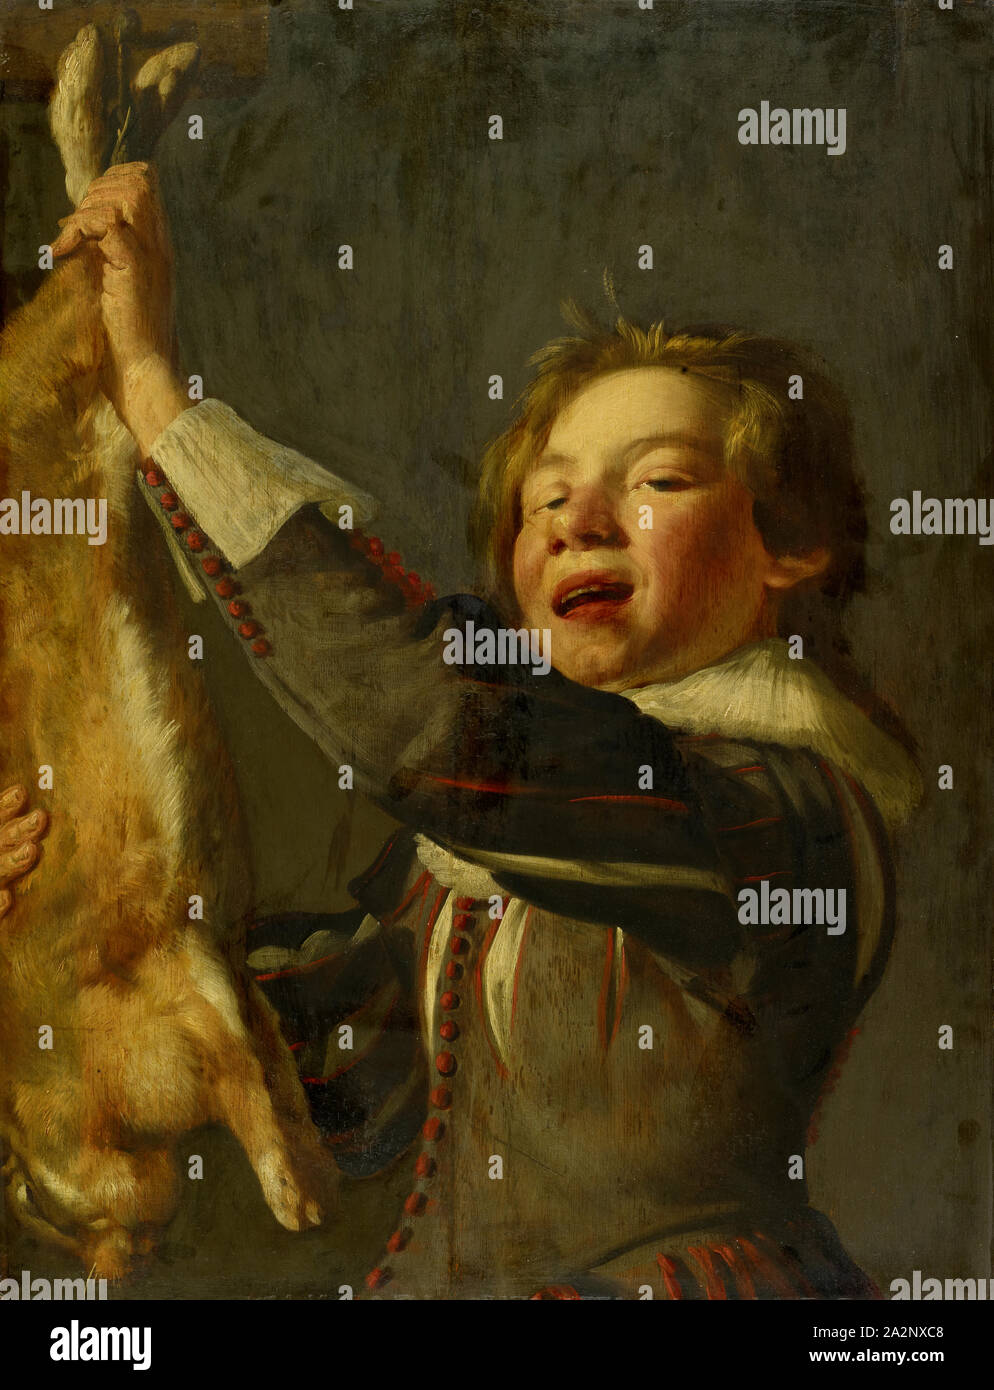 Junge mit toten Kaninchen, Öl auf Eichenholz, 65 x 50 cm unsigniert, Frans Hals, (Umkreis/Kreis), Antwerpen 1581/85-1666 Haarlem Stockfoto